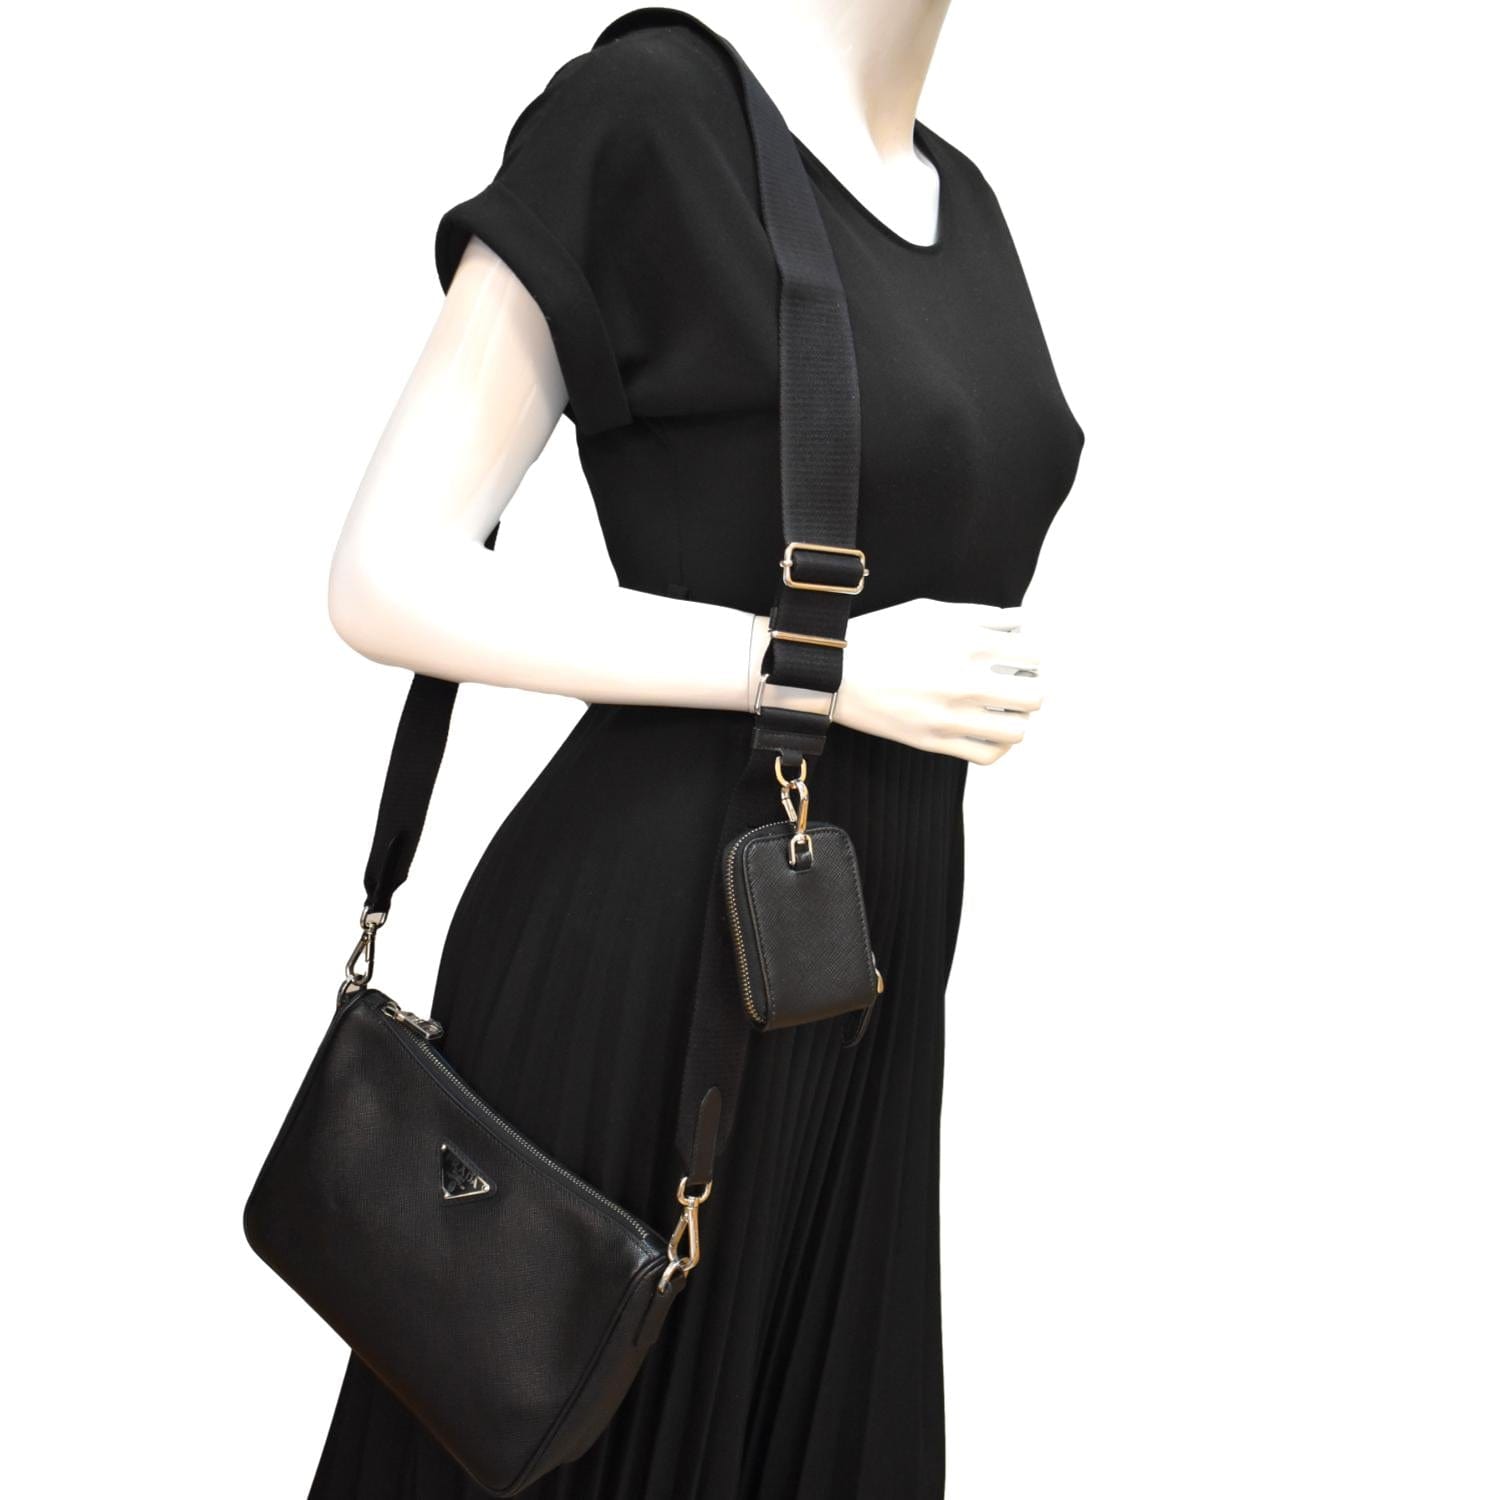 Prada Saffiano-leather Shoulder Bag